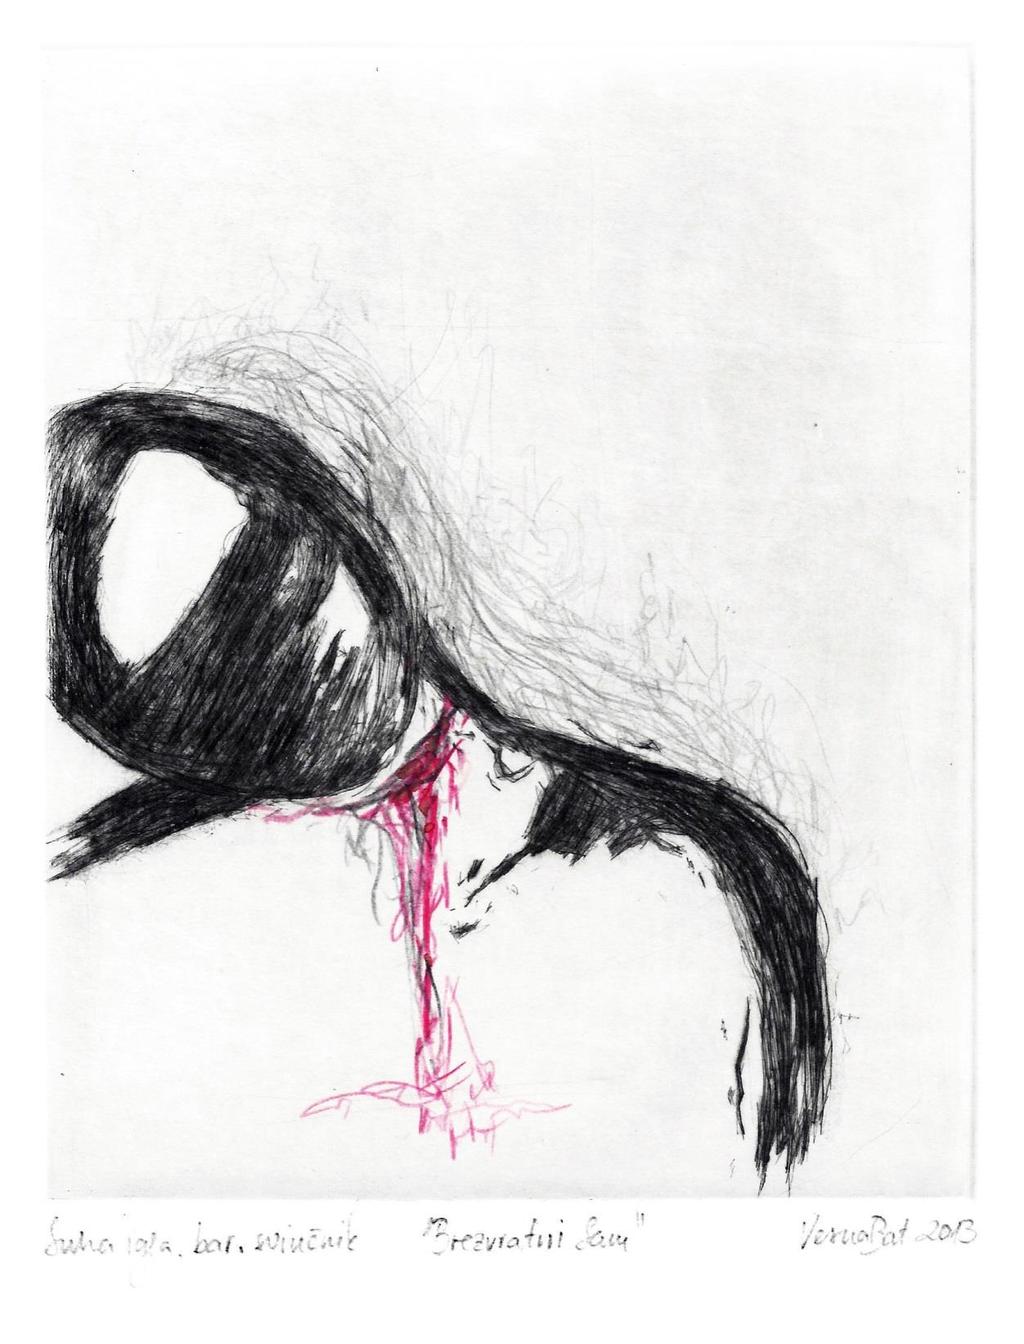 Slika 11: Vesna Bat, Brezvratni Sam, 2013, suha igla in barvni svinčnik, 25 x 35 cm Osnovni grafiki je dodana